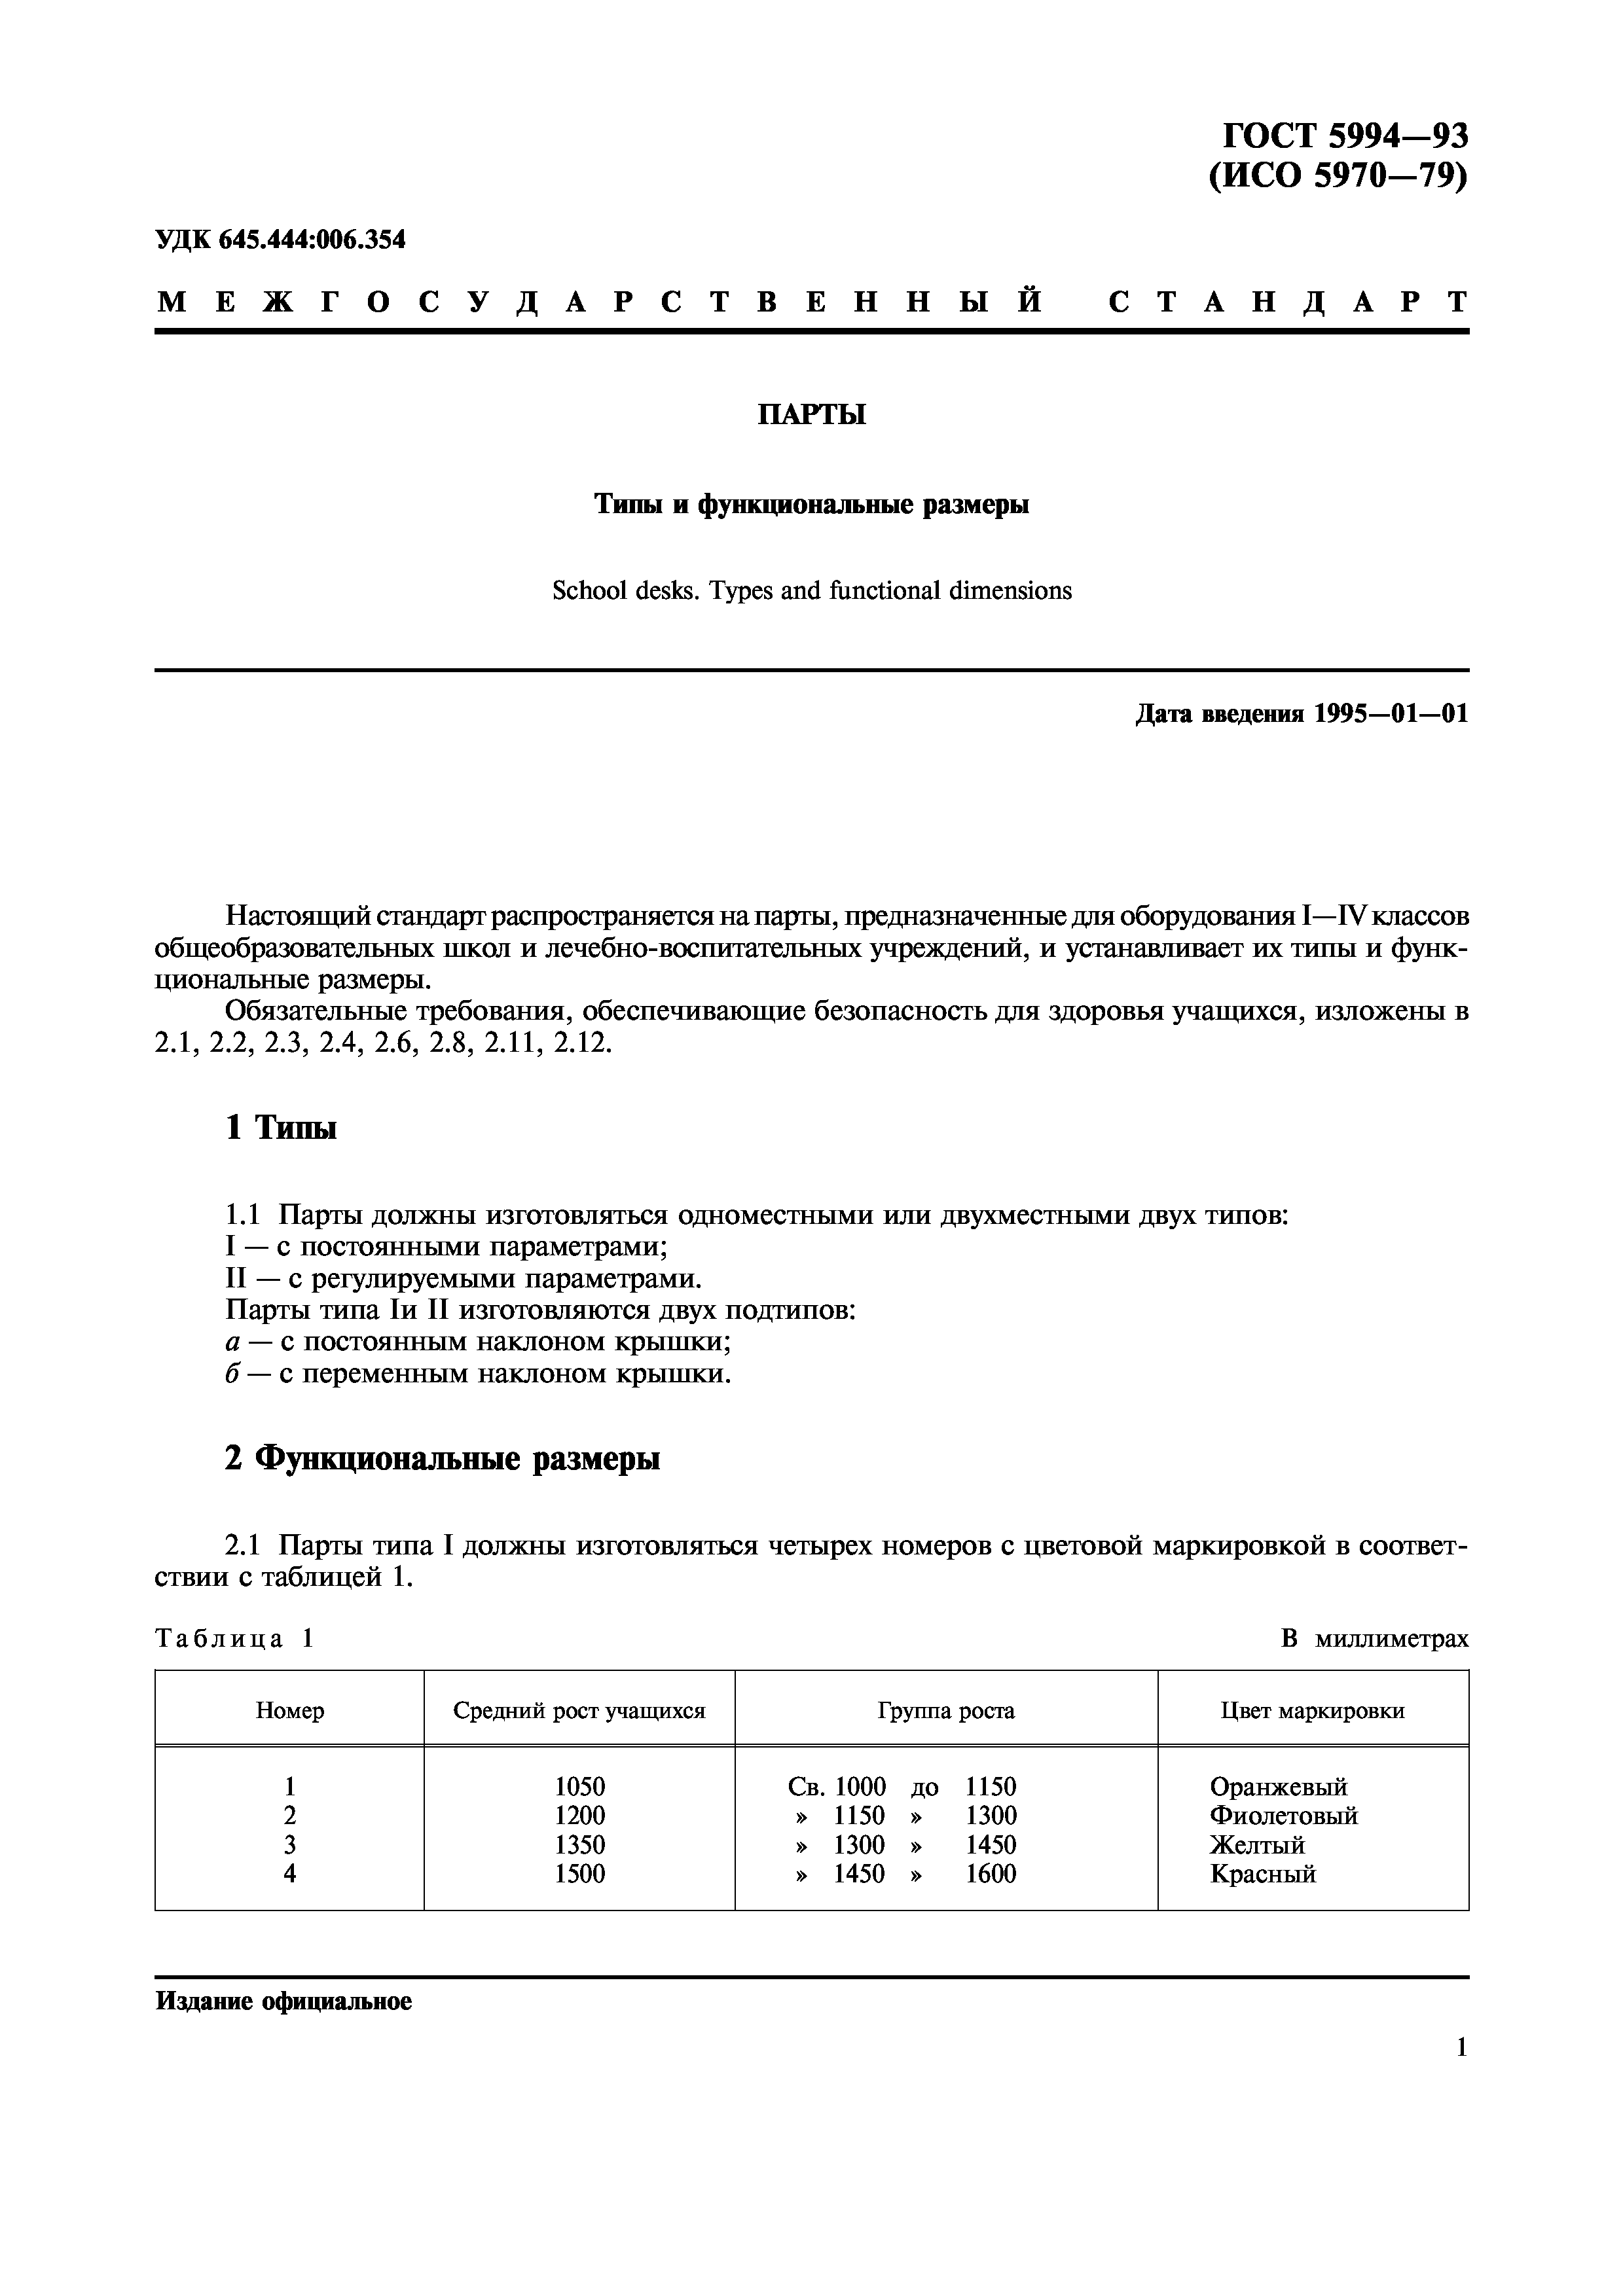 ГОСТ 5994-93 парты типы и функциональные Размеры